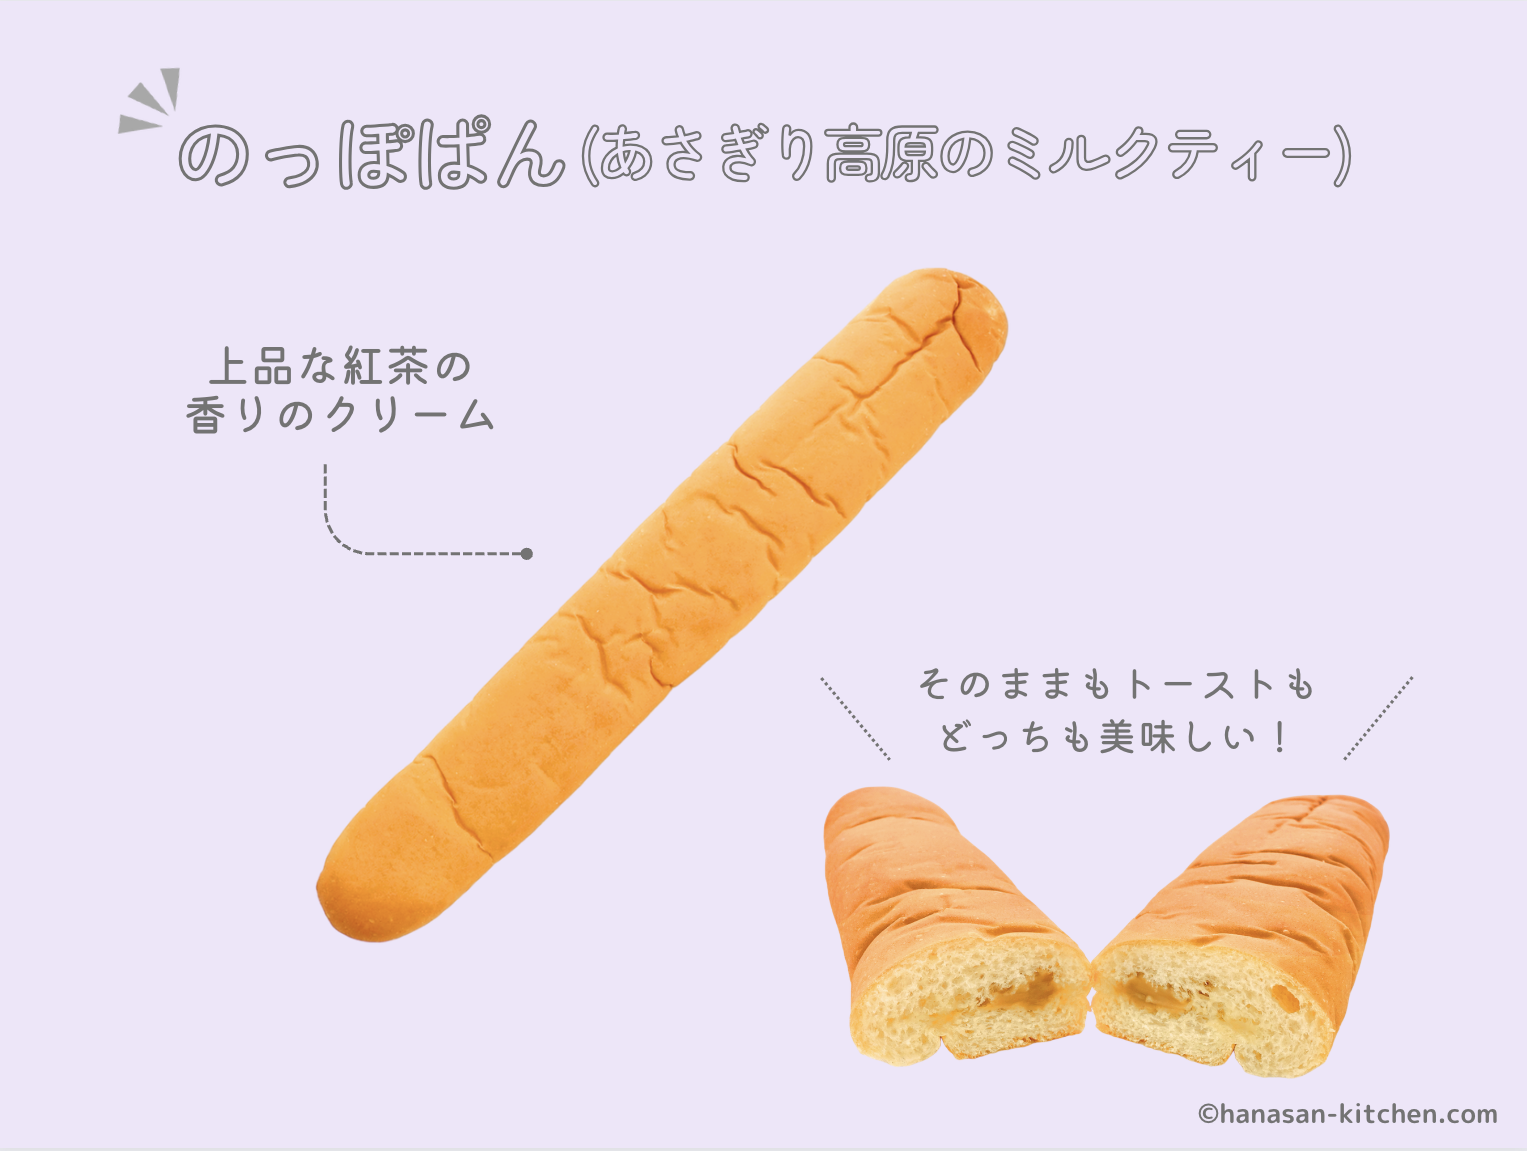 のっぽパン(あさぎり高原のミルクティー)の解説